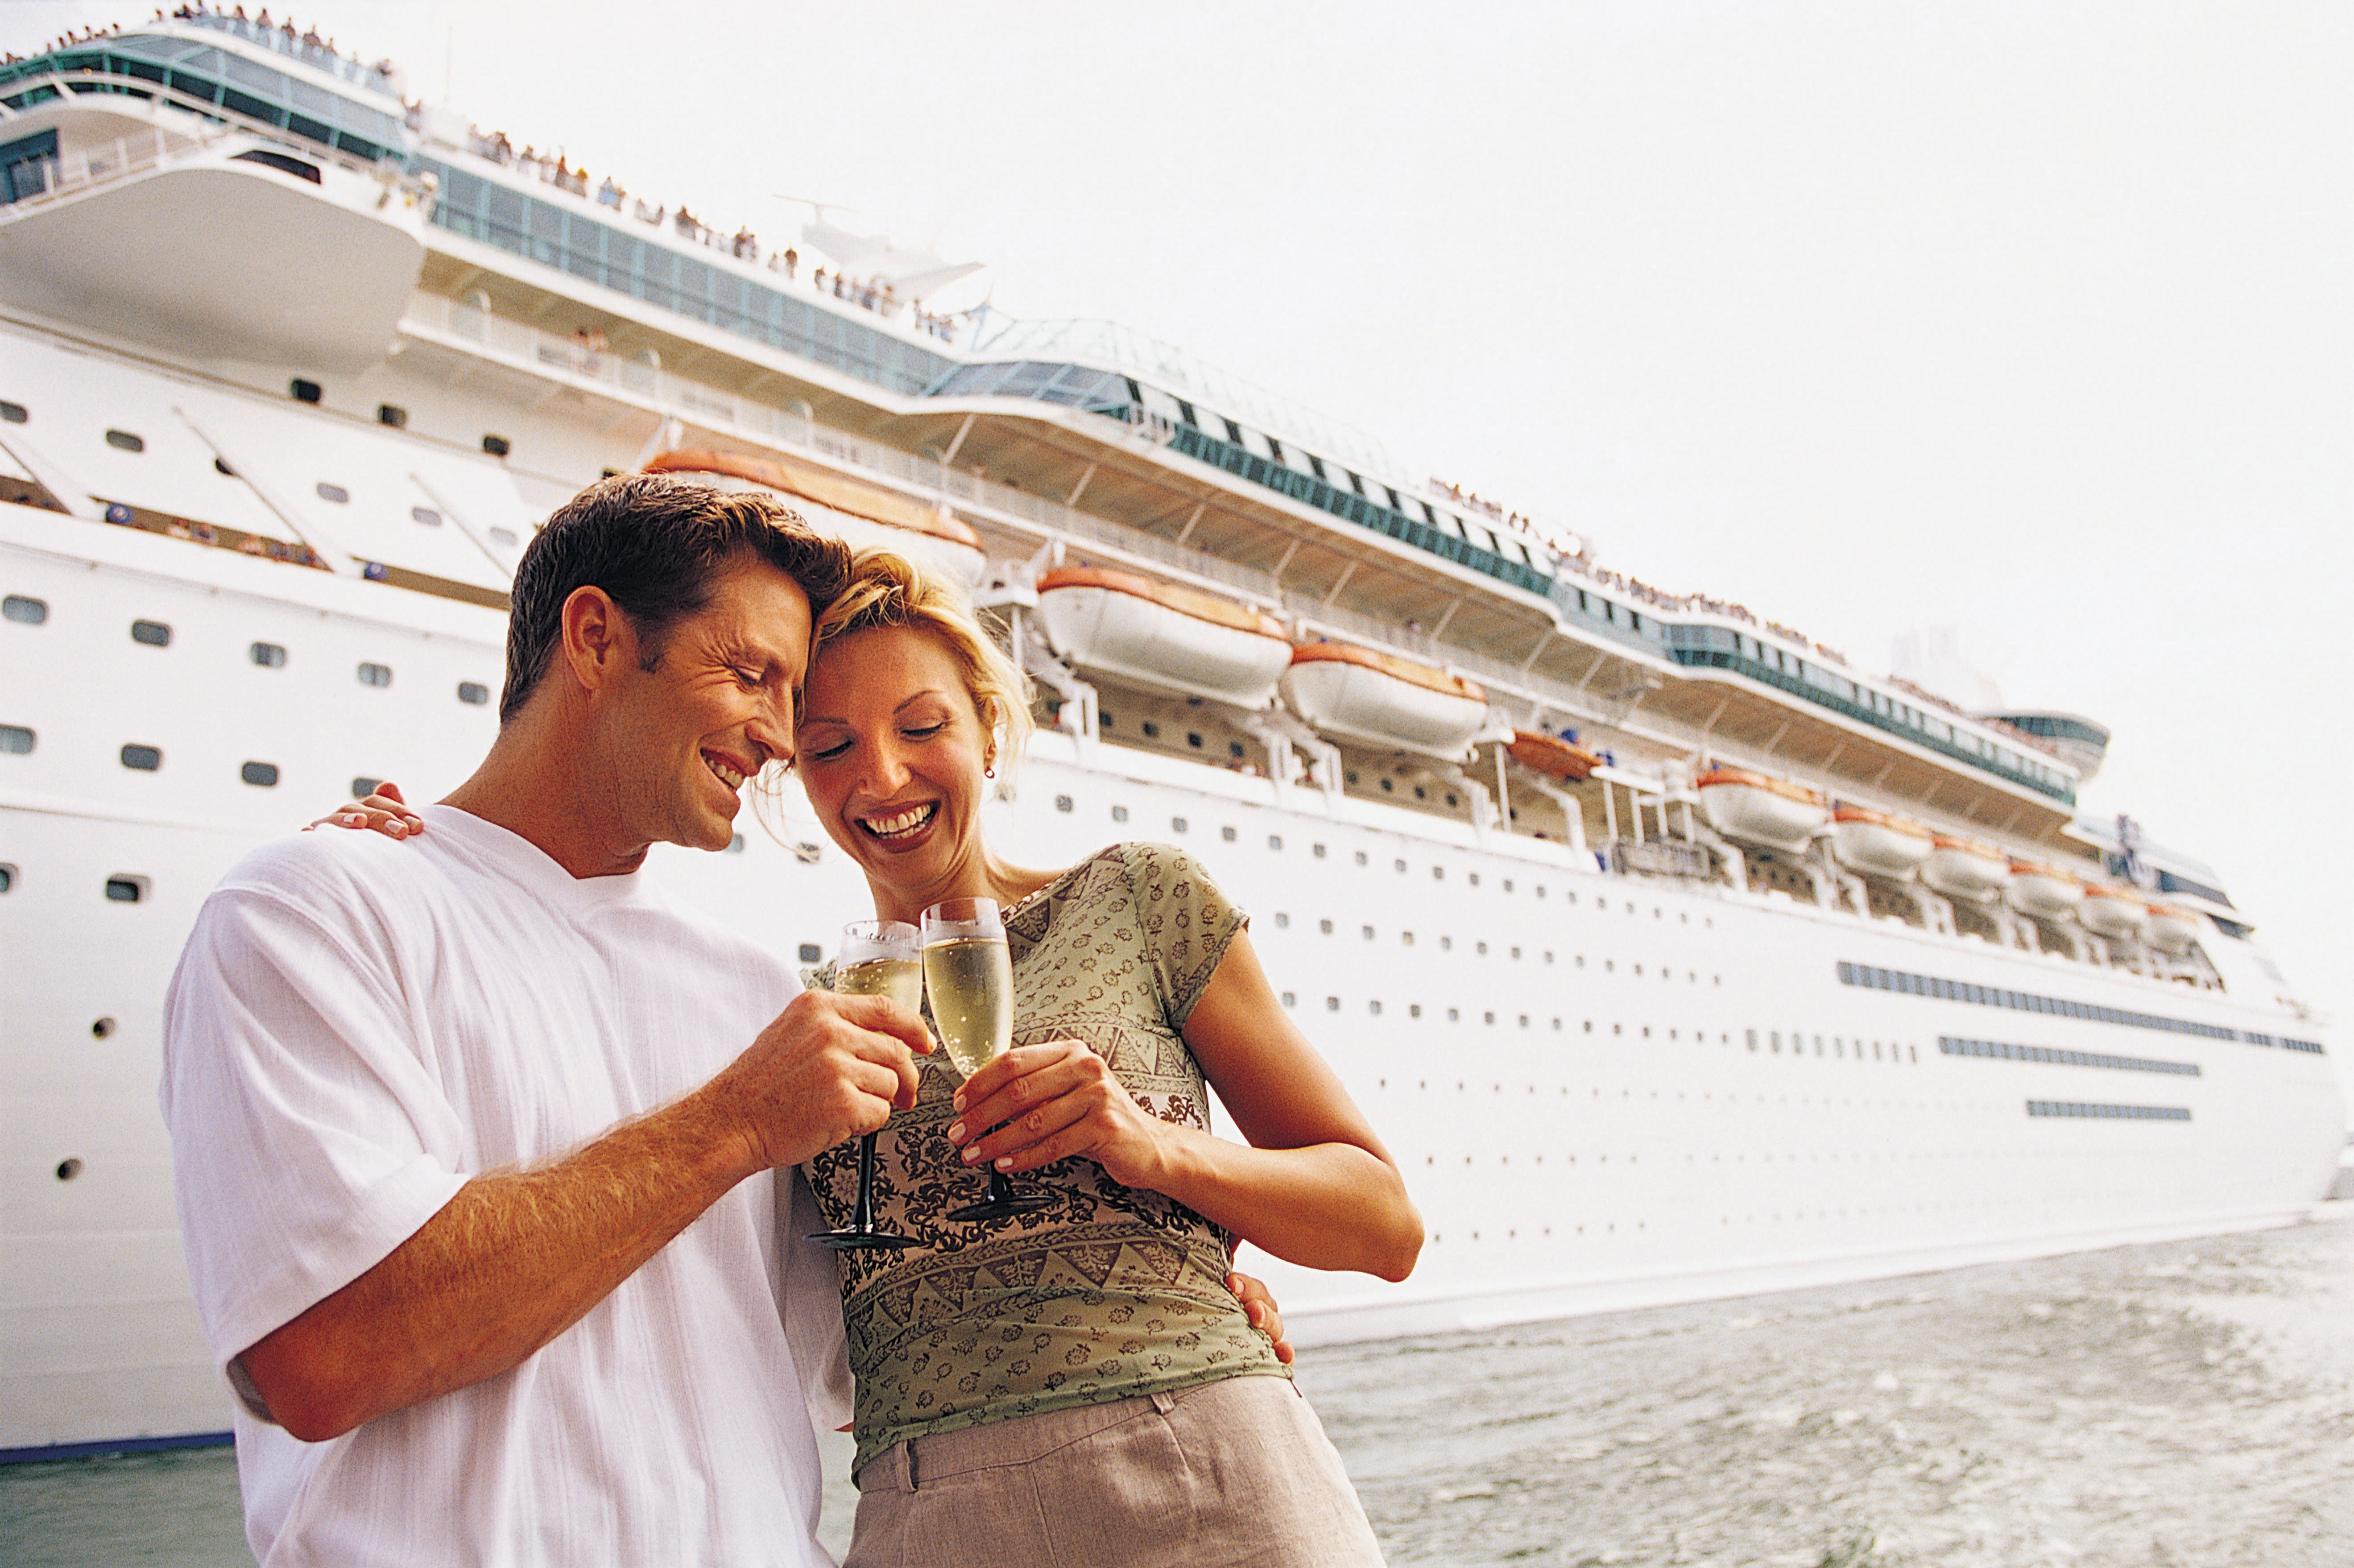 Cruise secrets: Avoid casinos for poor odds, Travel News, Travel